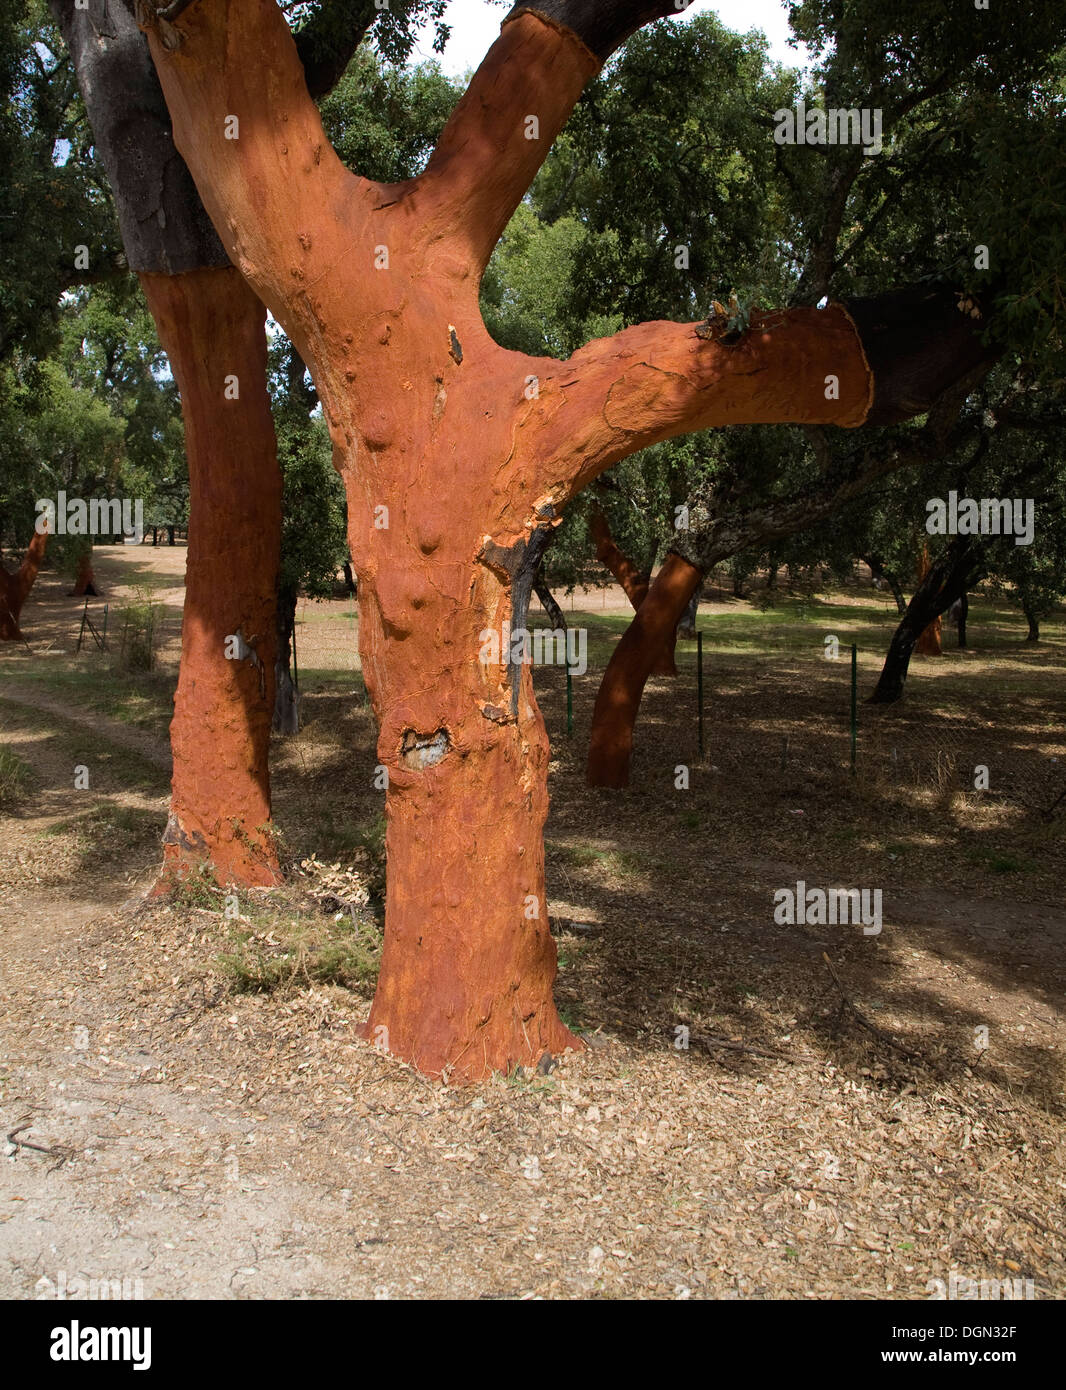 Roter Baumstämme frisch geerntete Rinde Quercus Suber, Korkeiche, Naturpark Sierra de Grazalema, Provinz Cadiz, Spanien Stockfoto